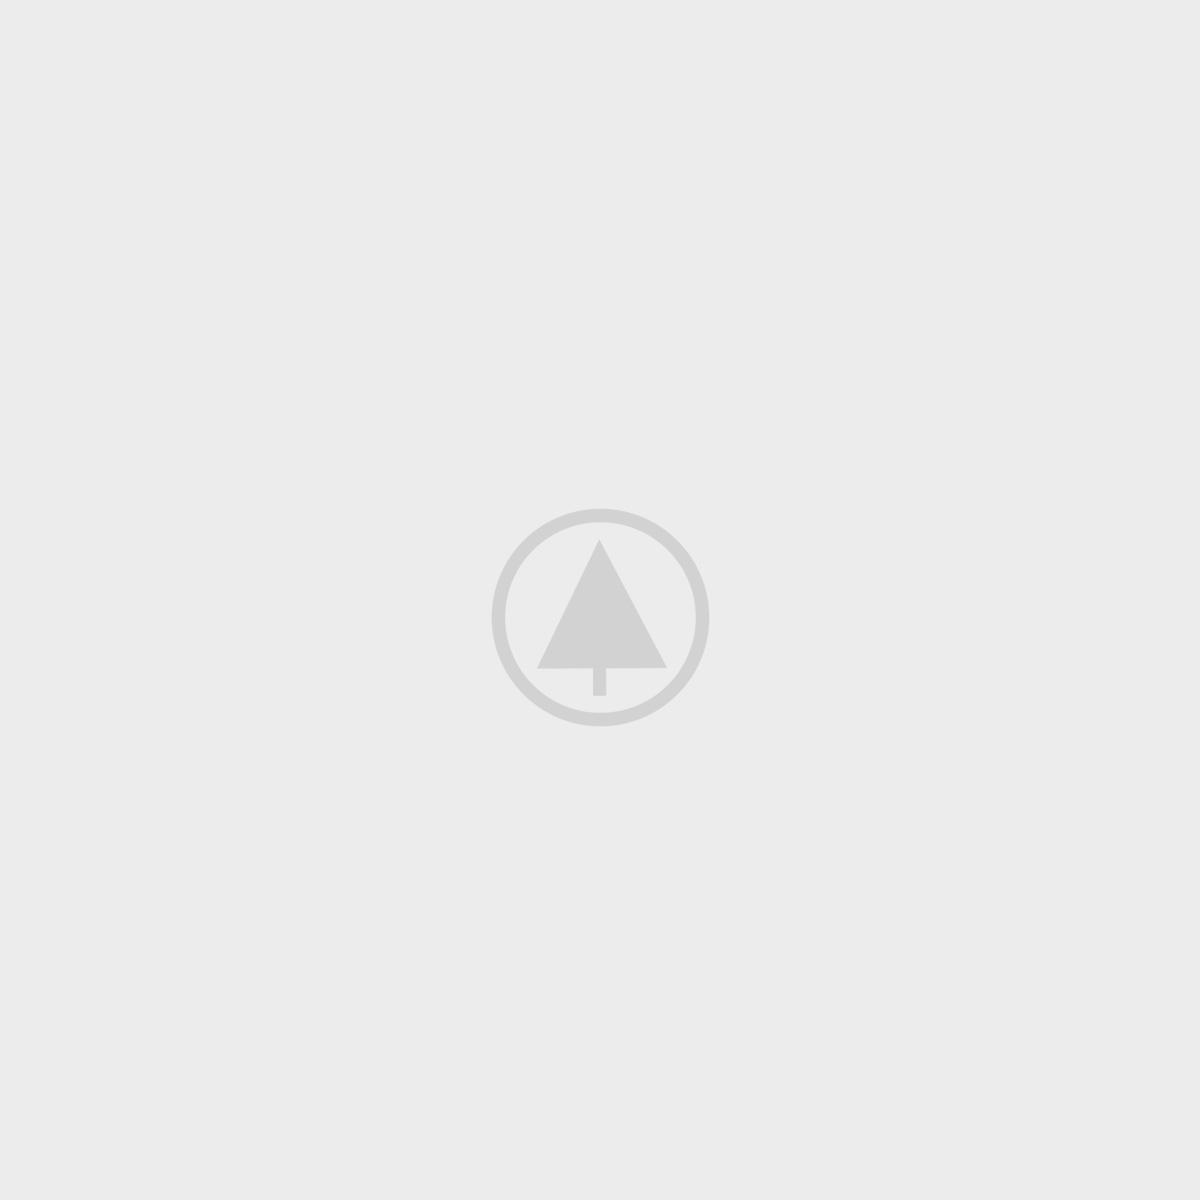 Karagana paparastoji ‘Pendula’ PA C10/120-140